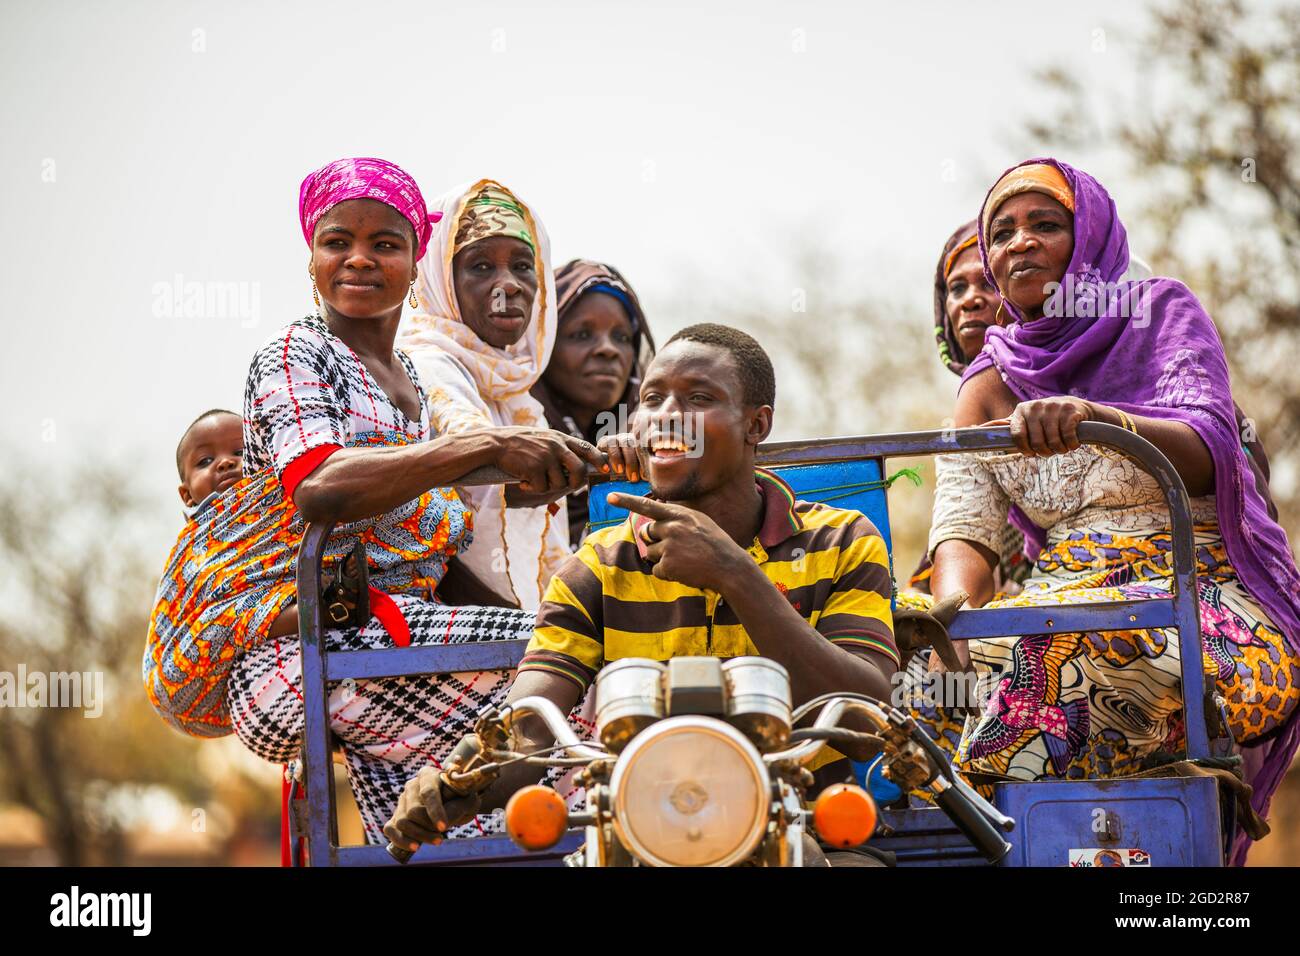 Un homme conduisant une moto chariot ferries ouest Afrique village femmes ca. 21 février 2018 Banque D'Images